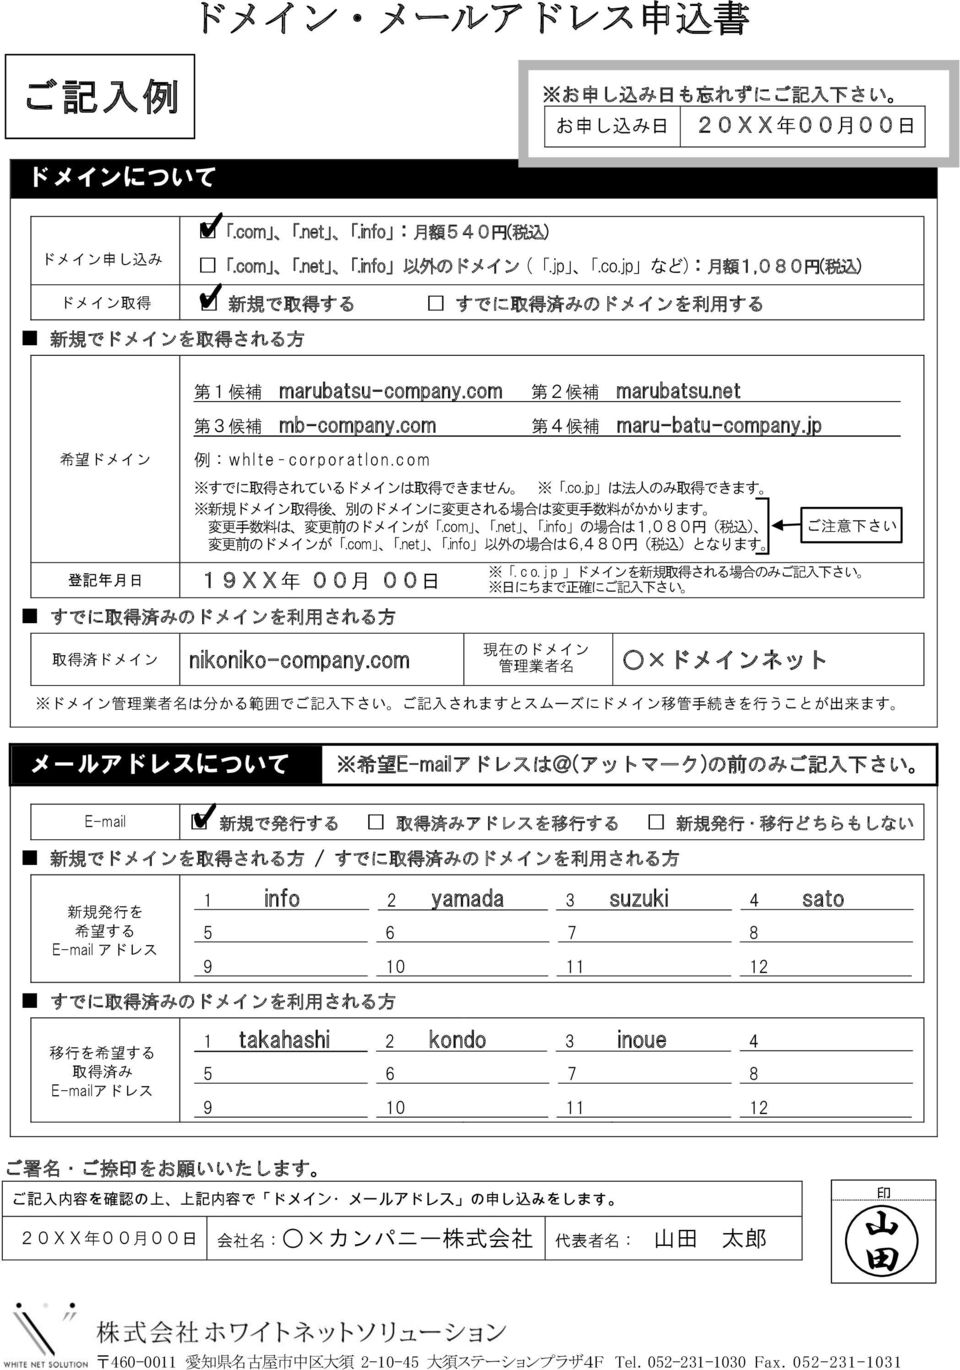 c o m 19XX 年 00 月 00 日 第 2 候 補 marubatsu.net 第 4 候 補 maru-batu-company.jp すでに 取 得 されているドメインは 取 得 できません.co.jp は 法 人 のみ 取 得 できます 新 規 ドメイン 取 得 後 別 のドメインに 変 更 される 場 合 は 変 更 手 数 料 がかかります 変 更 手 数 料 は 変 更 前 のドメインが.